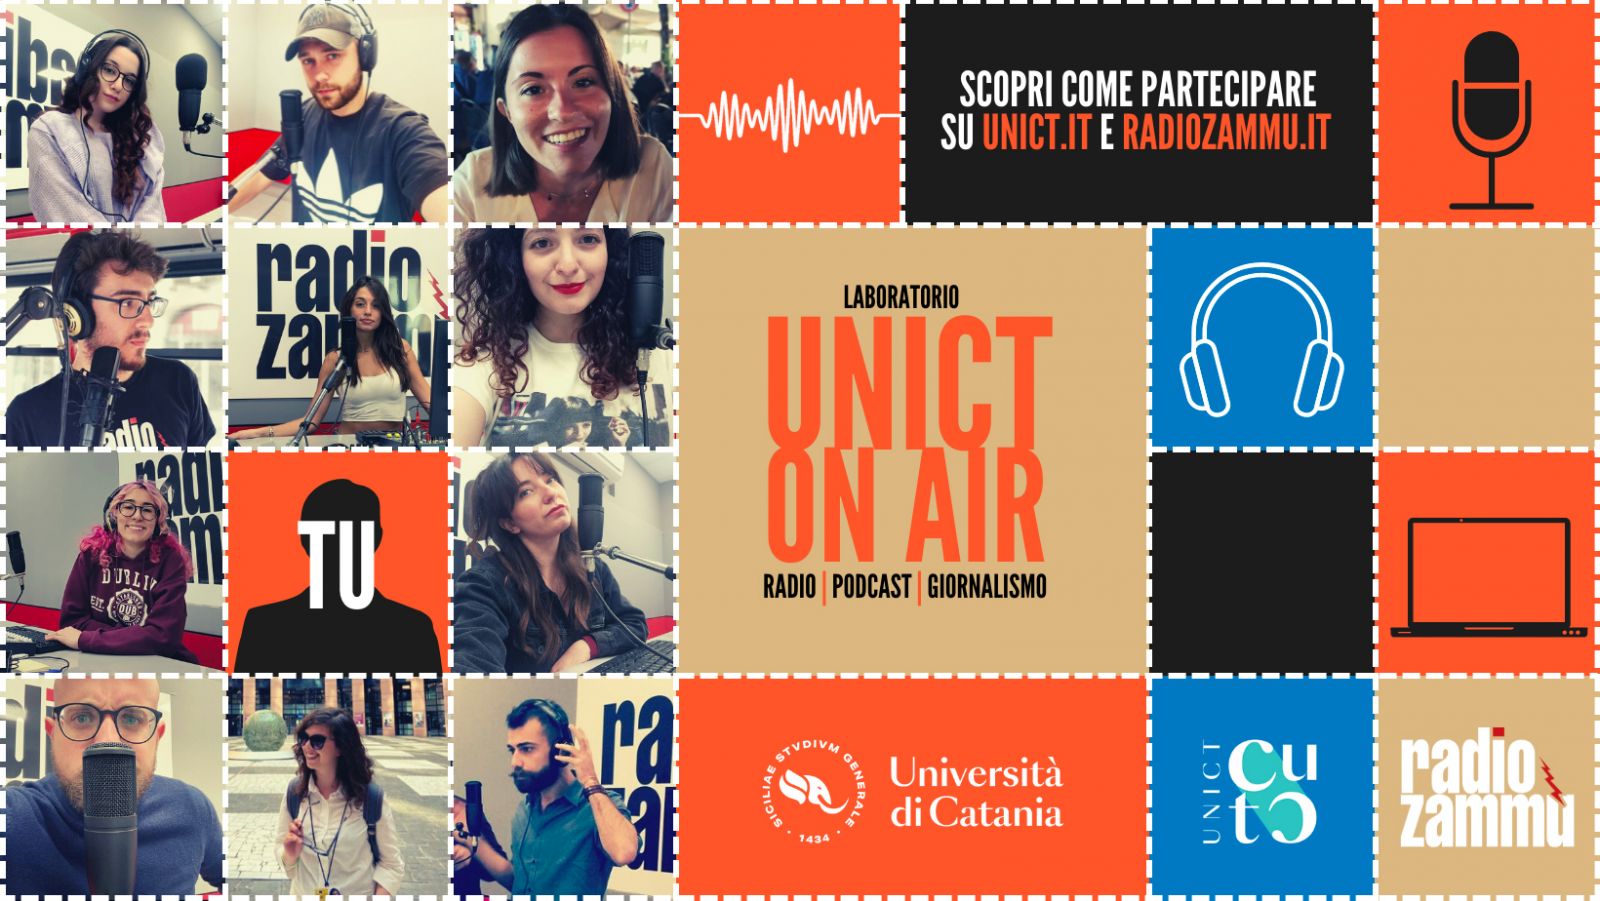 “Unict on air: radio, podcast, giornalismo”, al via le iscrizioni per il laboratorio